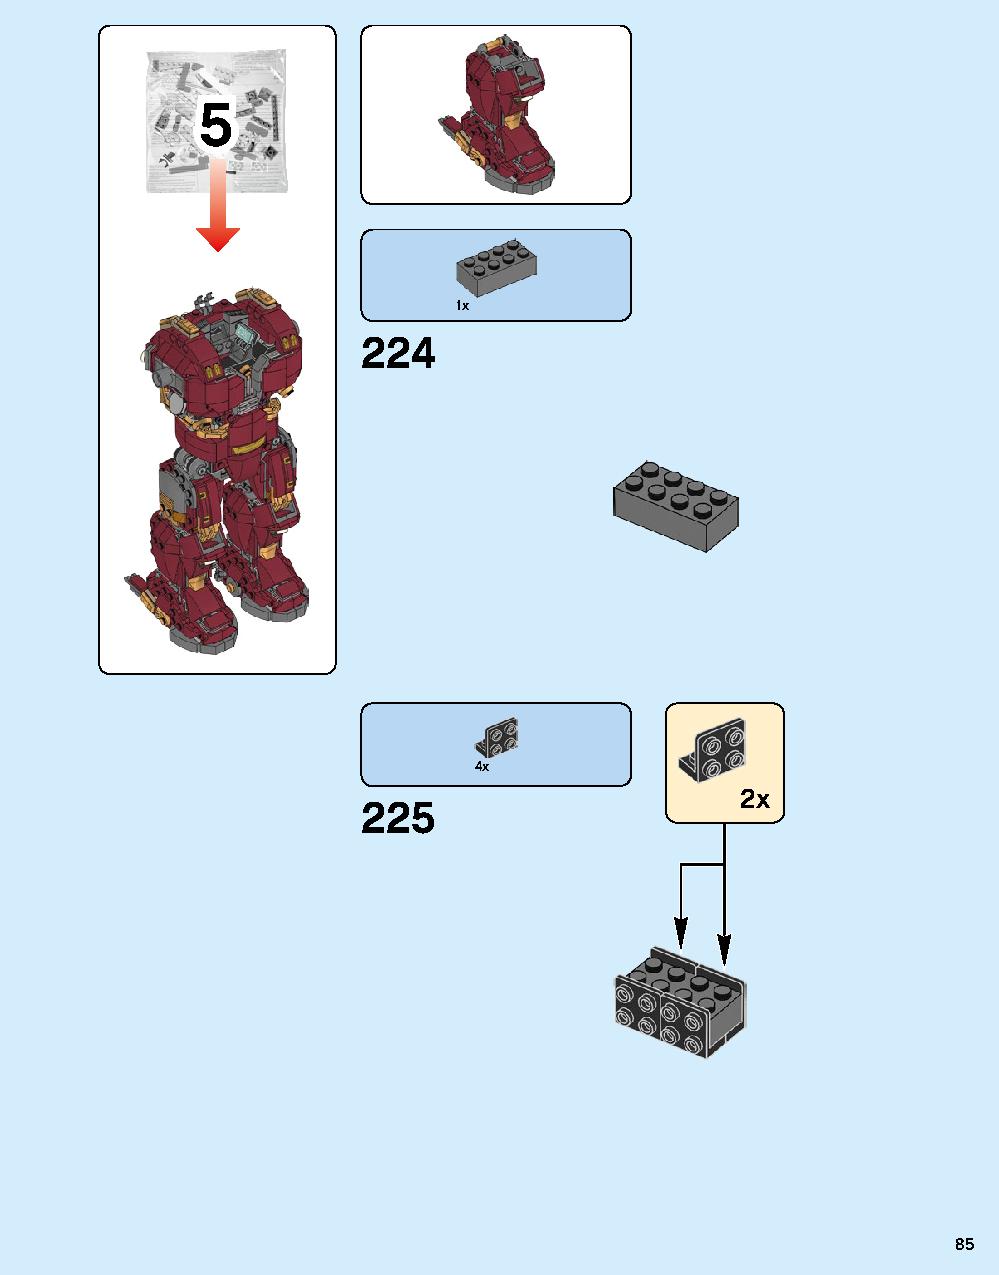 어벤져스 헐크버스터: 울트론 에디션 76105 레고 세트 제품정보 레고 조립설명서 85 page